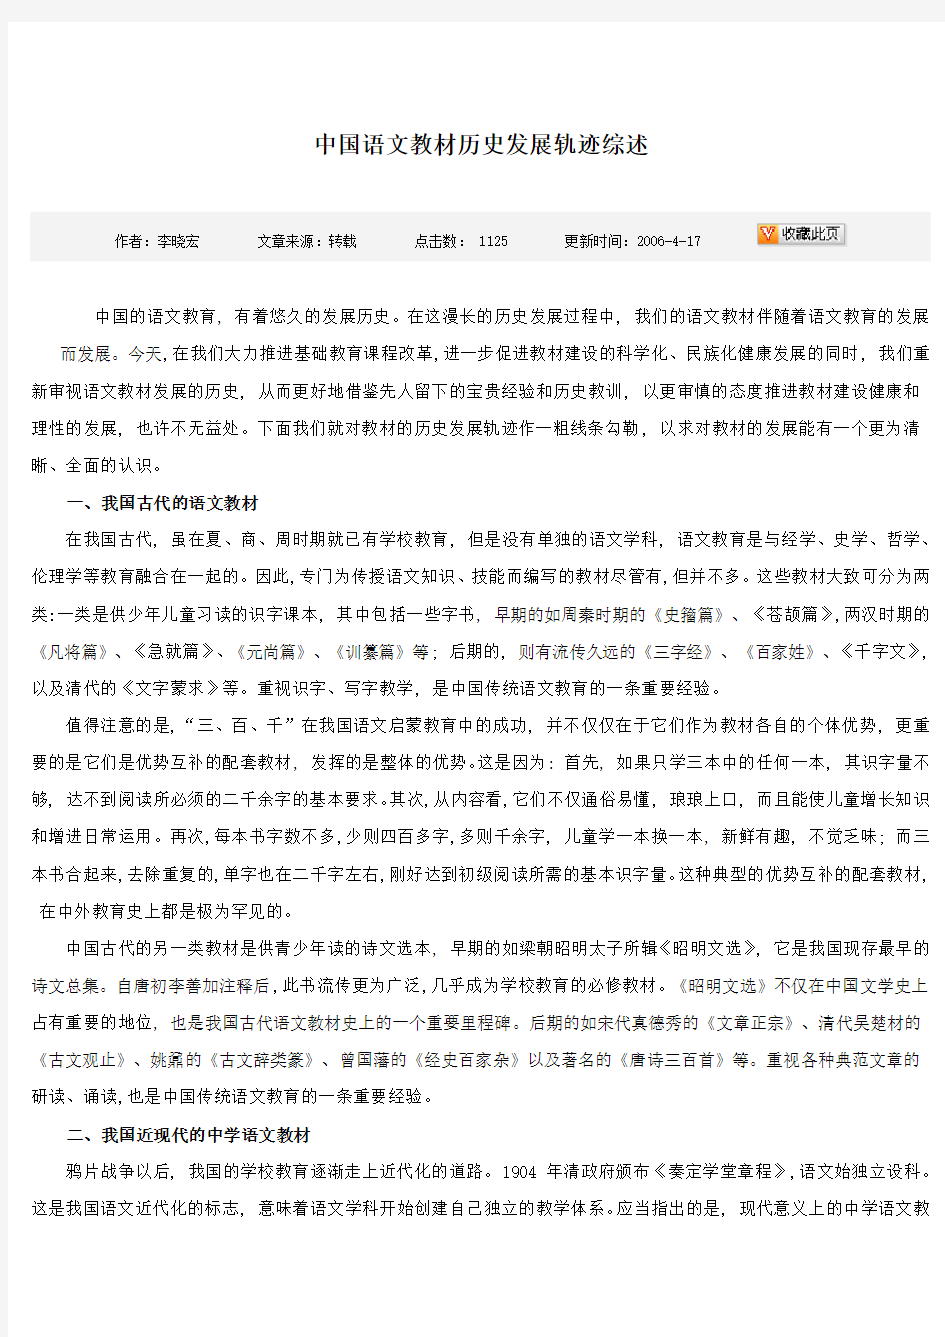 中国语文教材历史发展轨迹综述